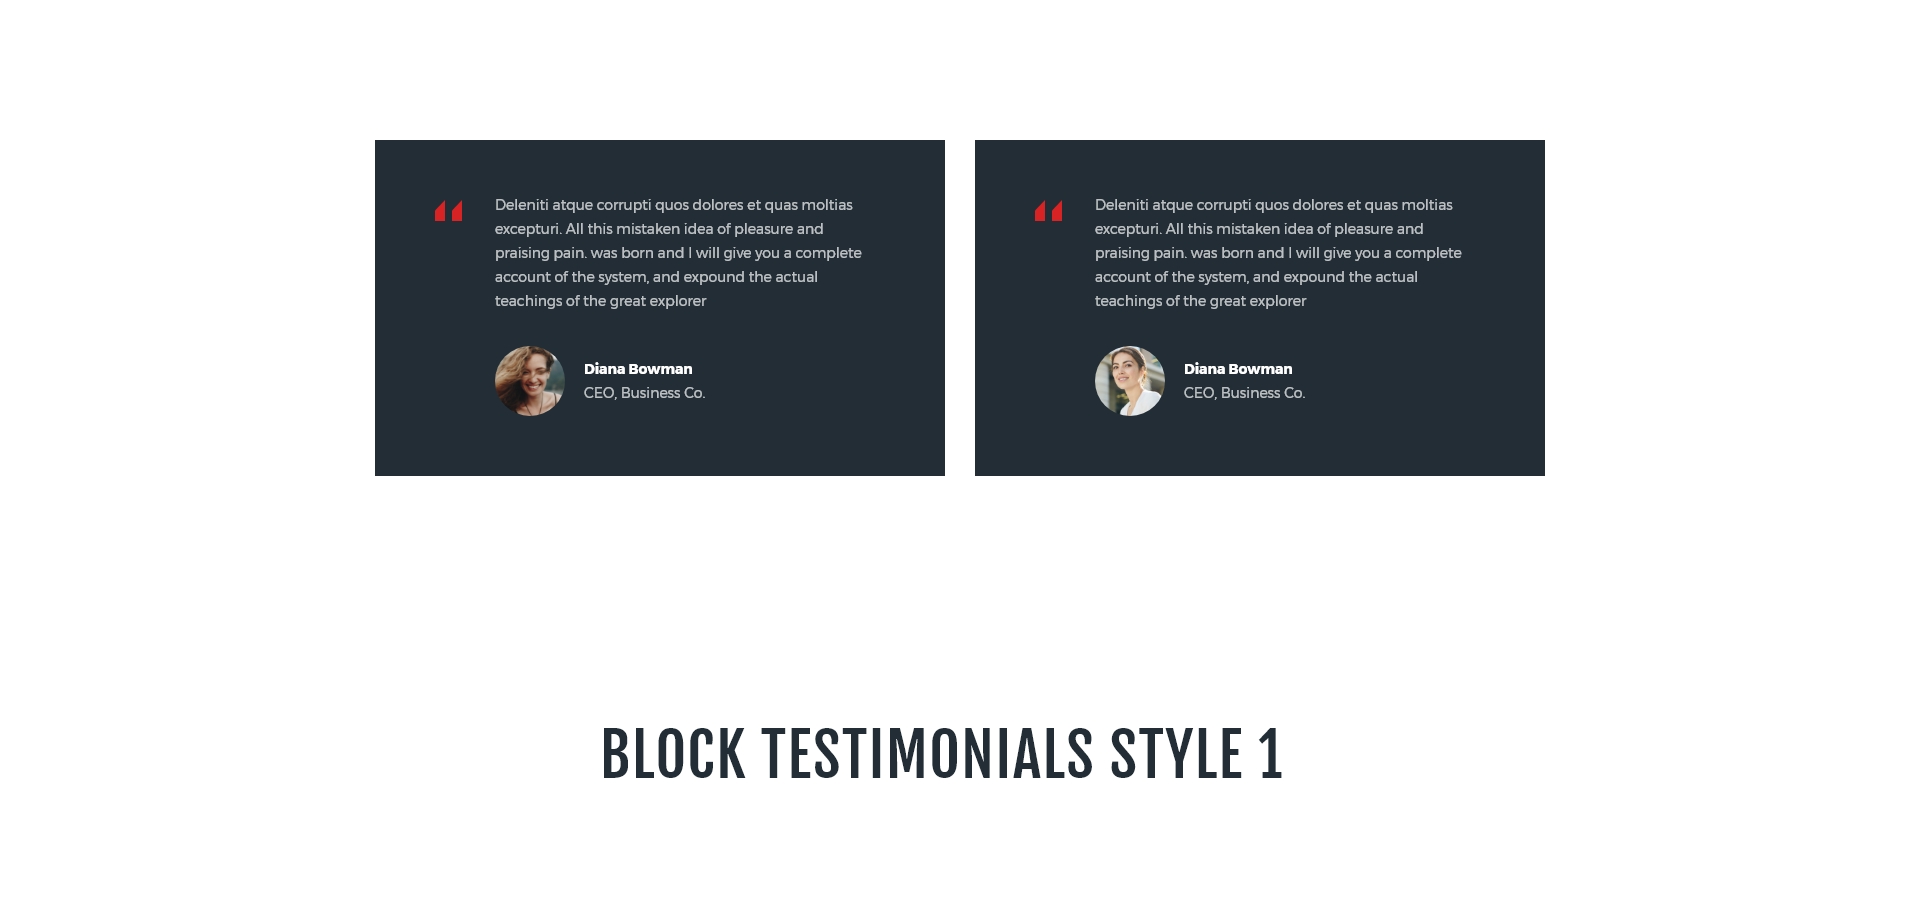 Block testimonials style 1